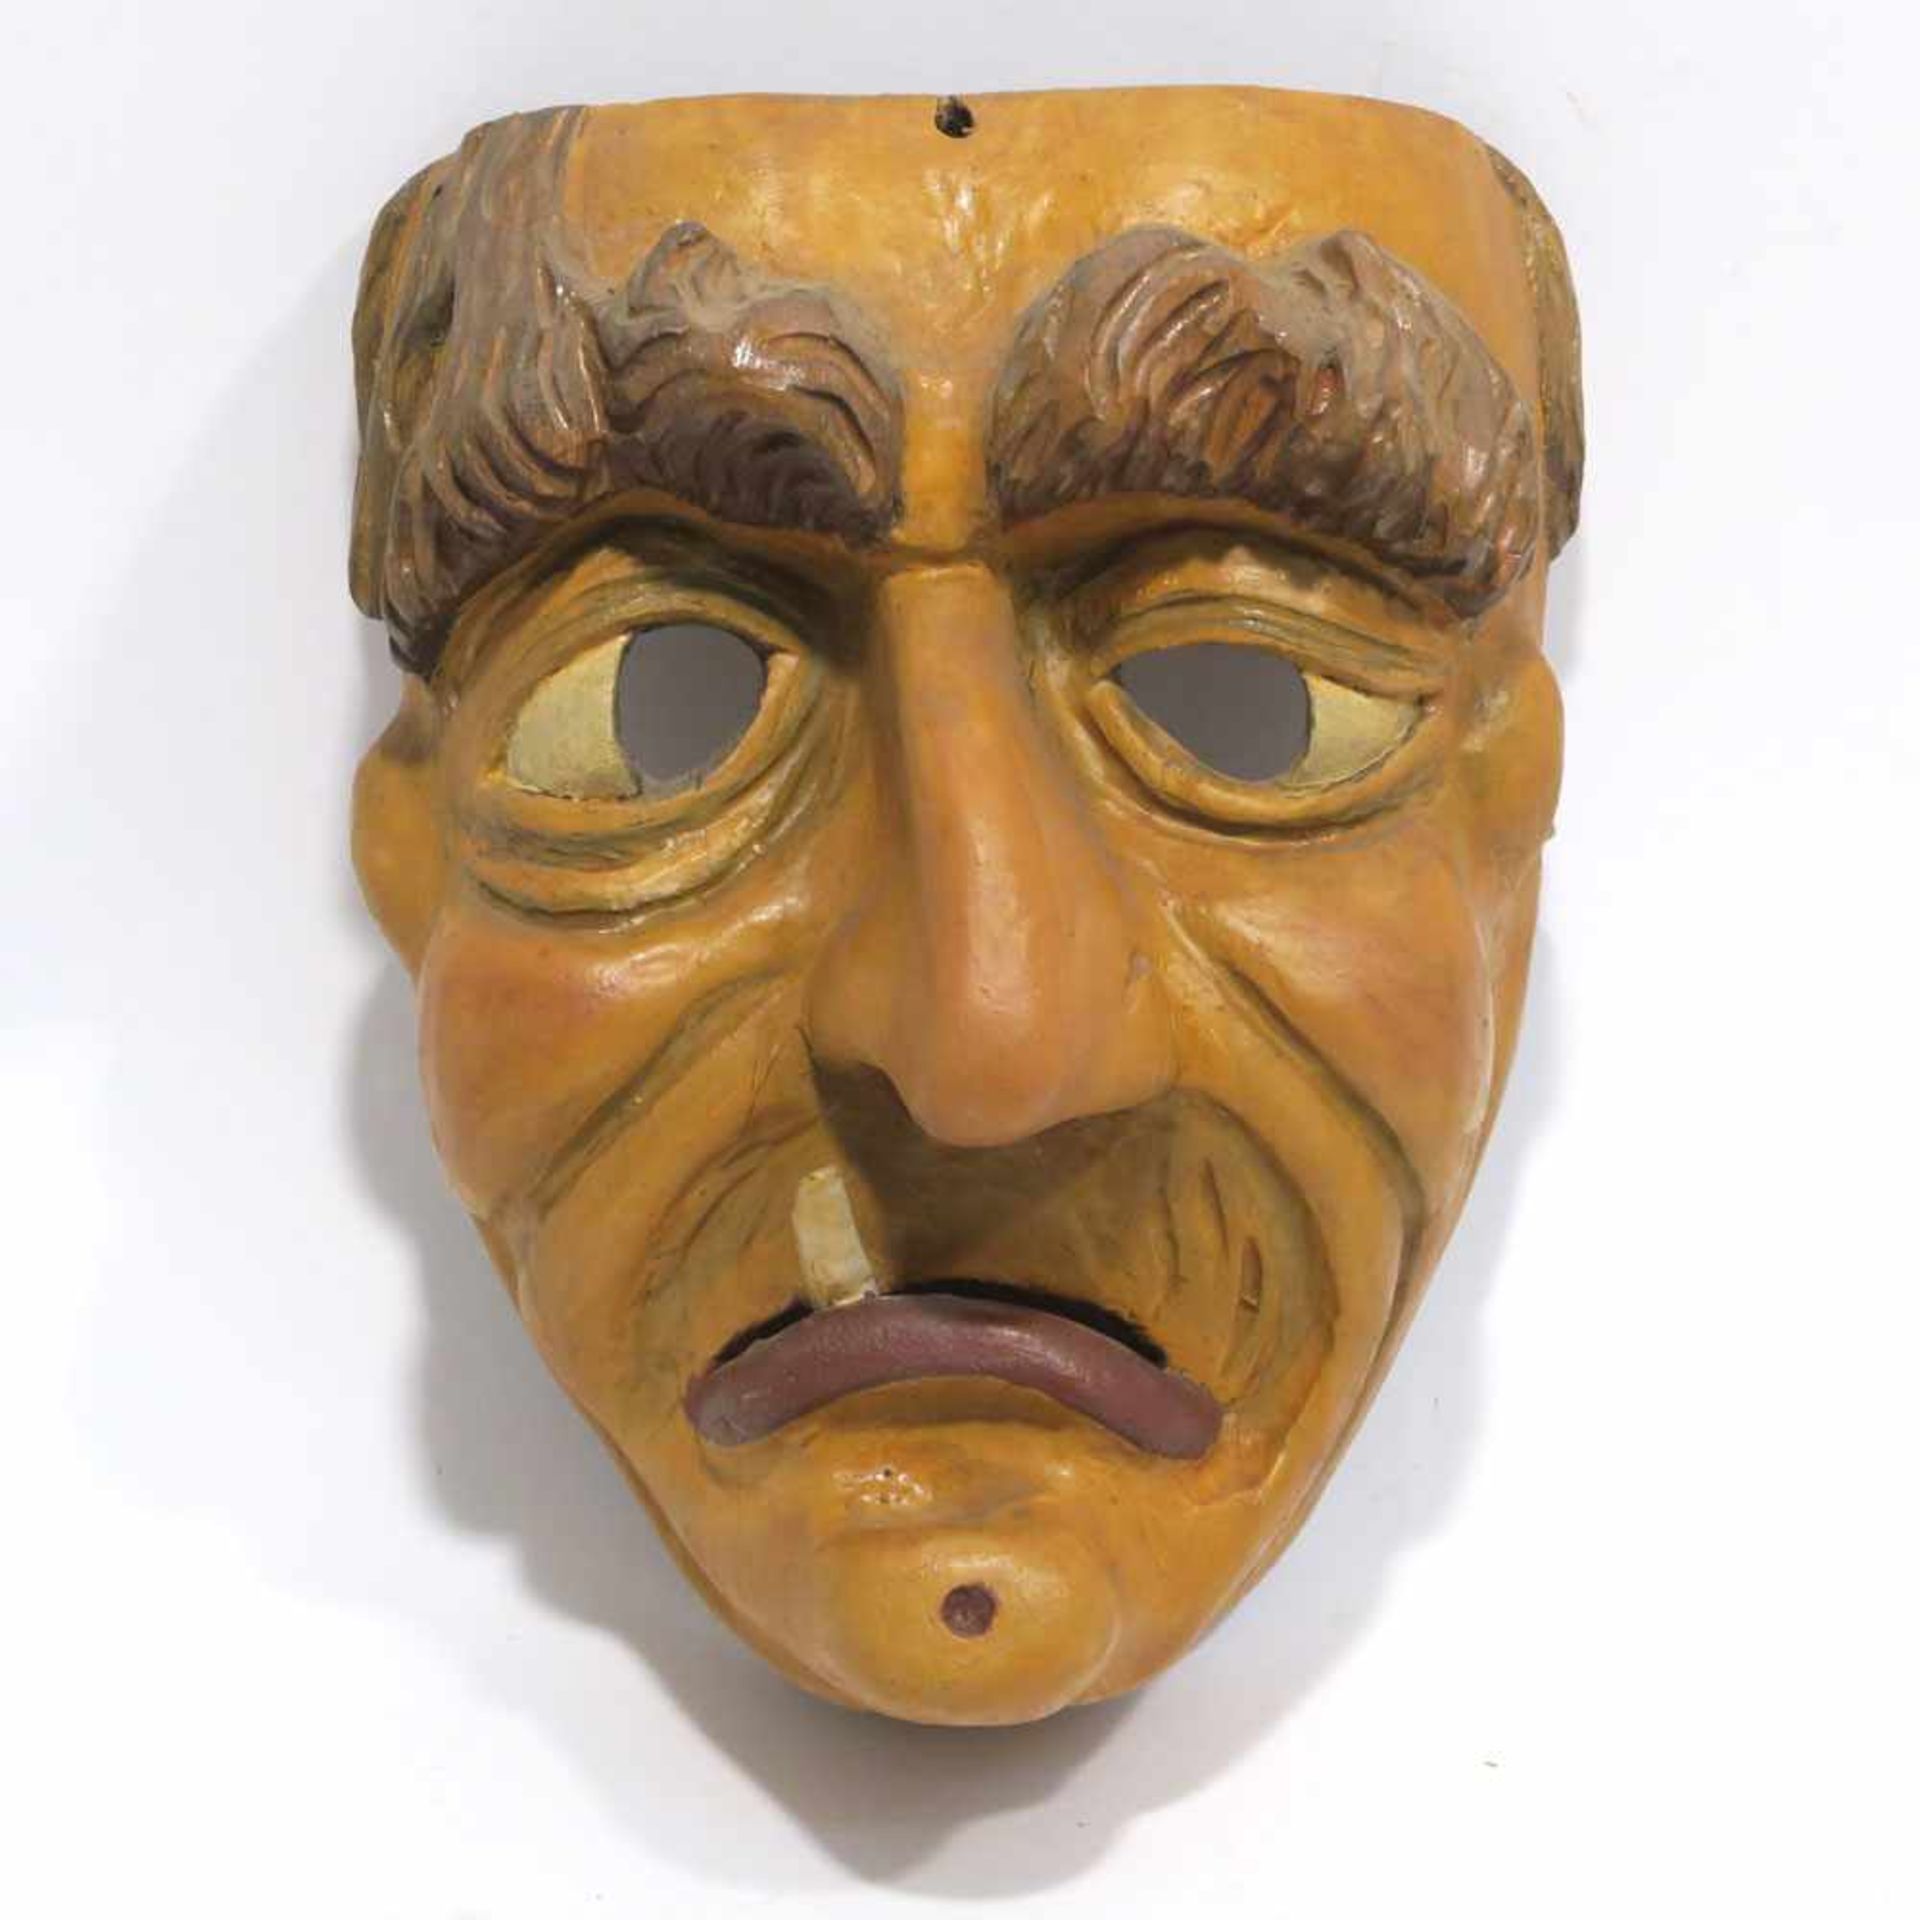 Faschingsmaske "Hexe"Alpenraum. Holz, geschnitzt, bemalt. H. ca. 22 cm.- - -26.00 % buyer's